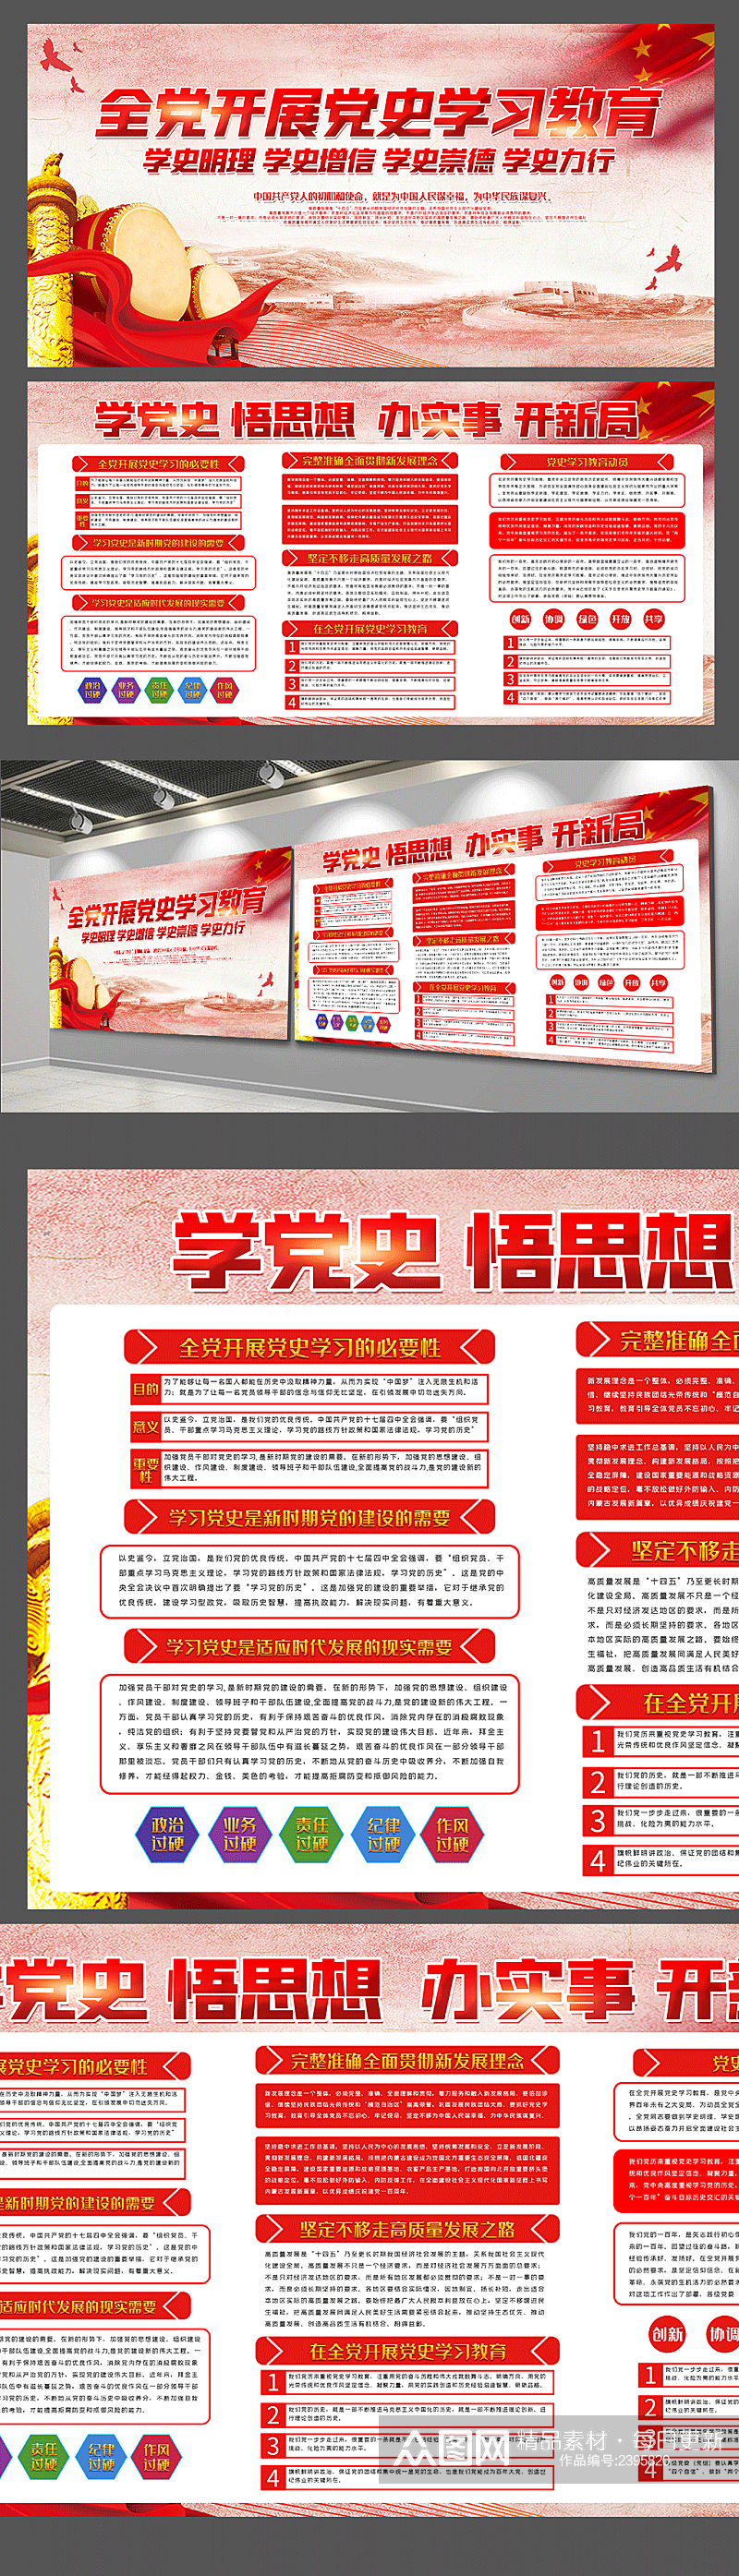 红色学党史内容宣传栏双面展板设计素材